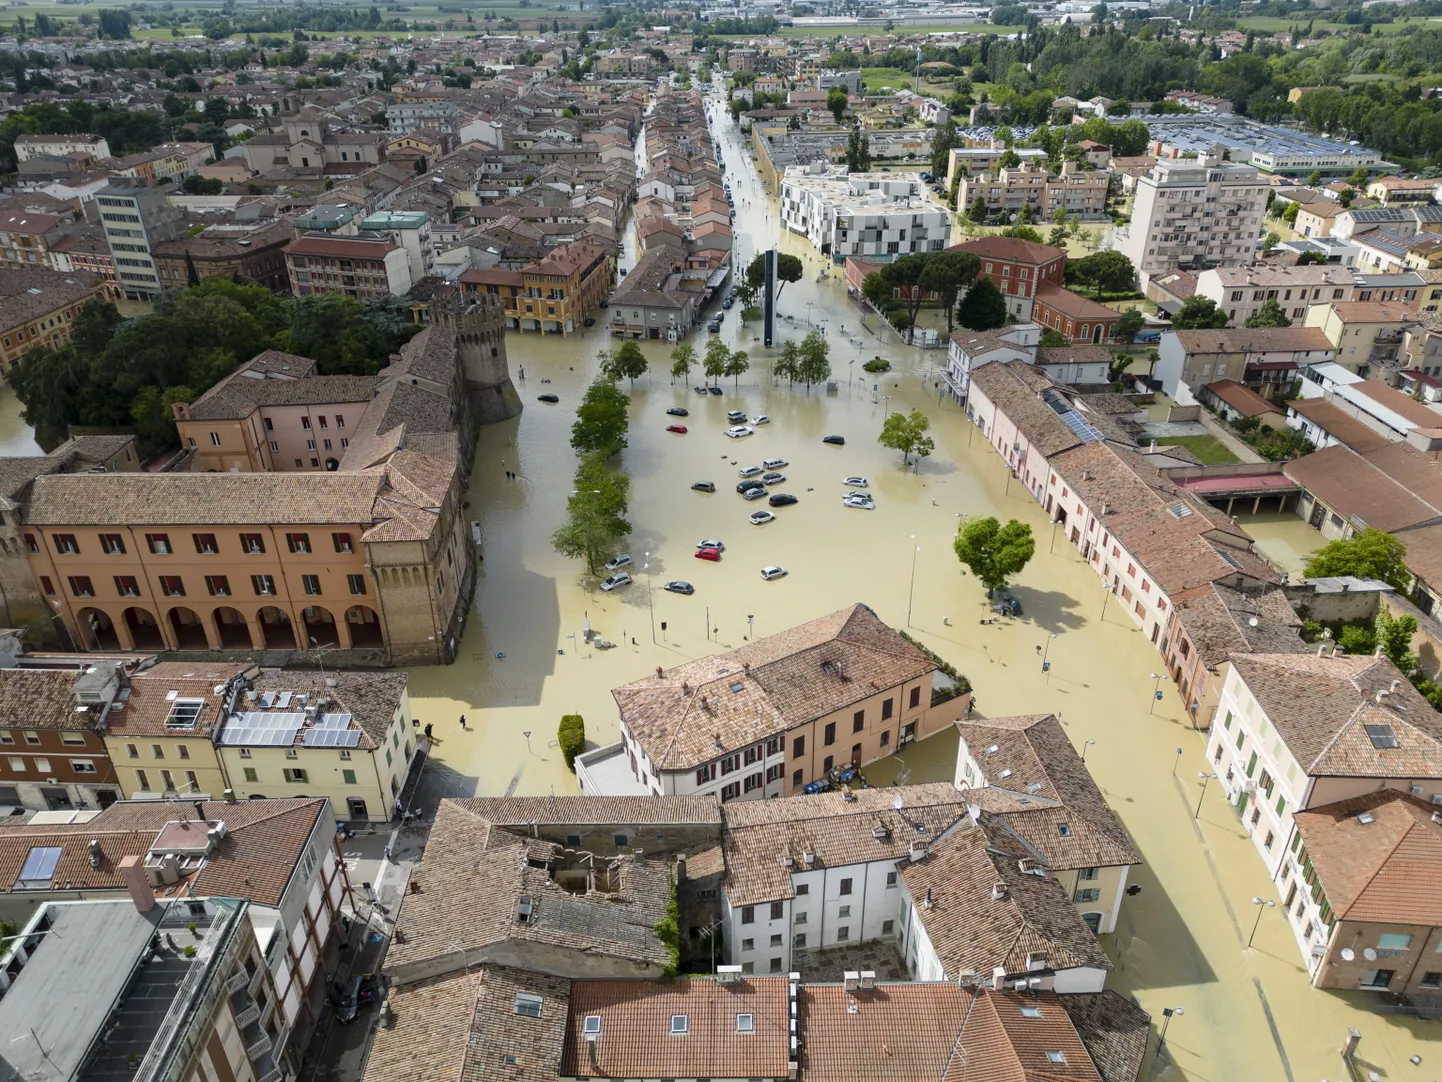 Vee alla jäänud Lugo linna keskus.